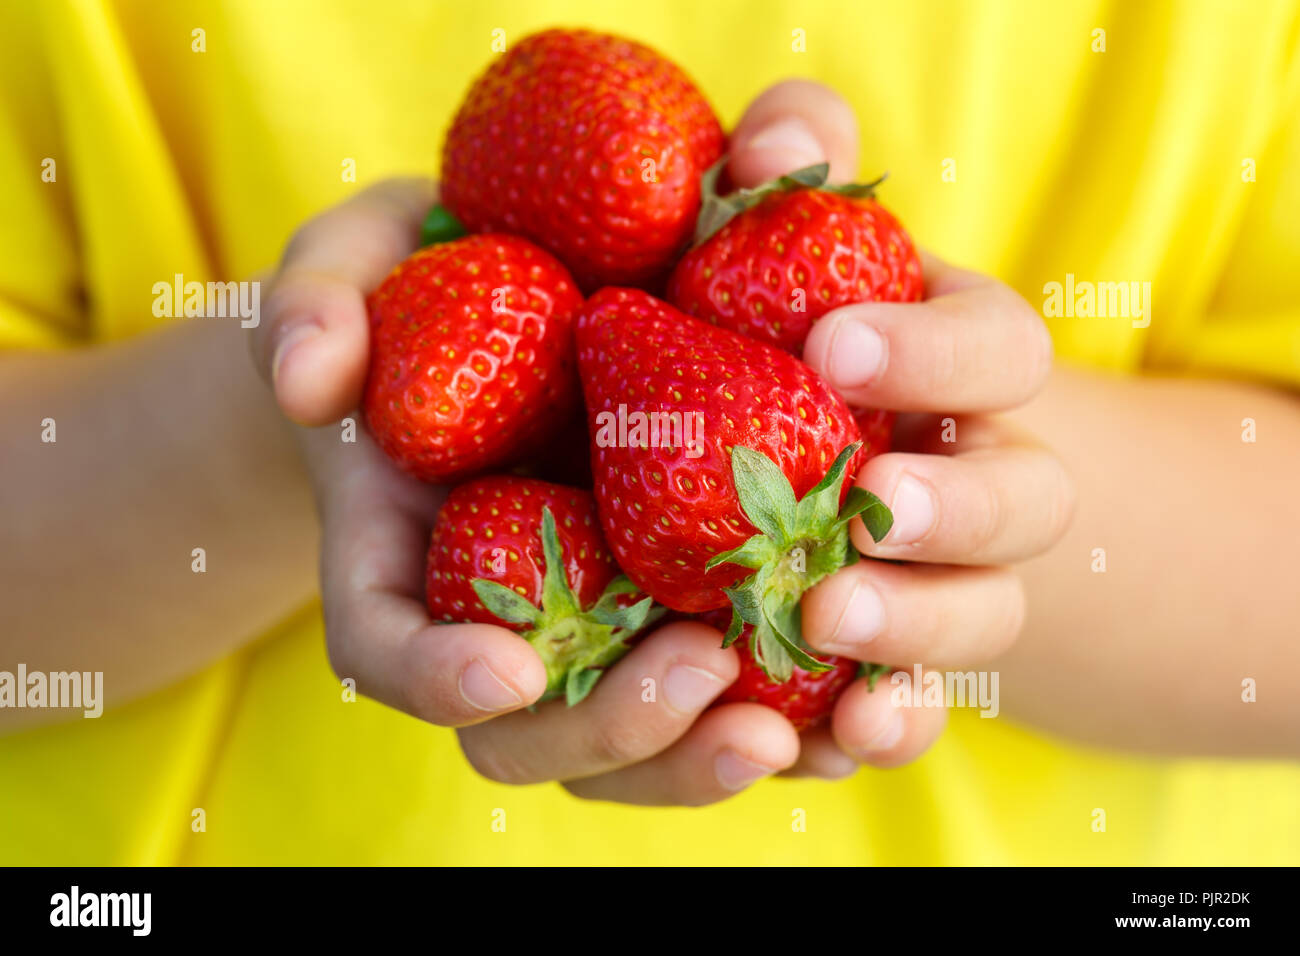 Petits fruits rouges fraises fruits d'été fruits fraise hands holding enfant petit garçon piscine Banque D'Images